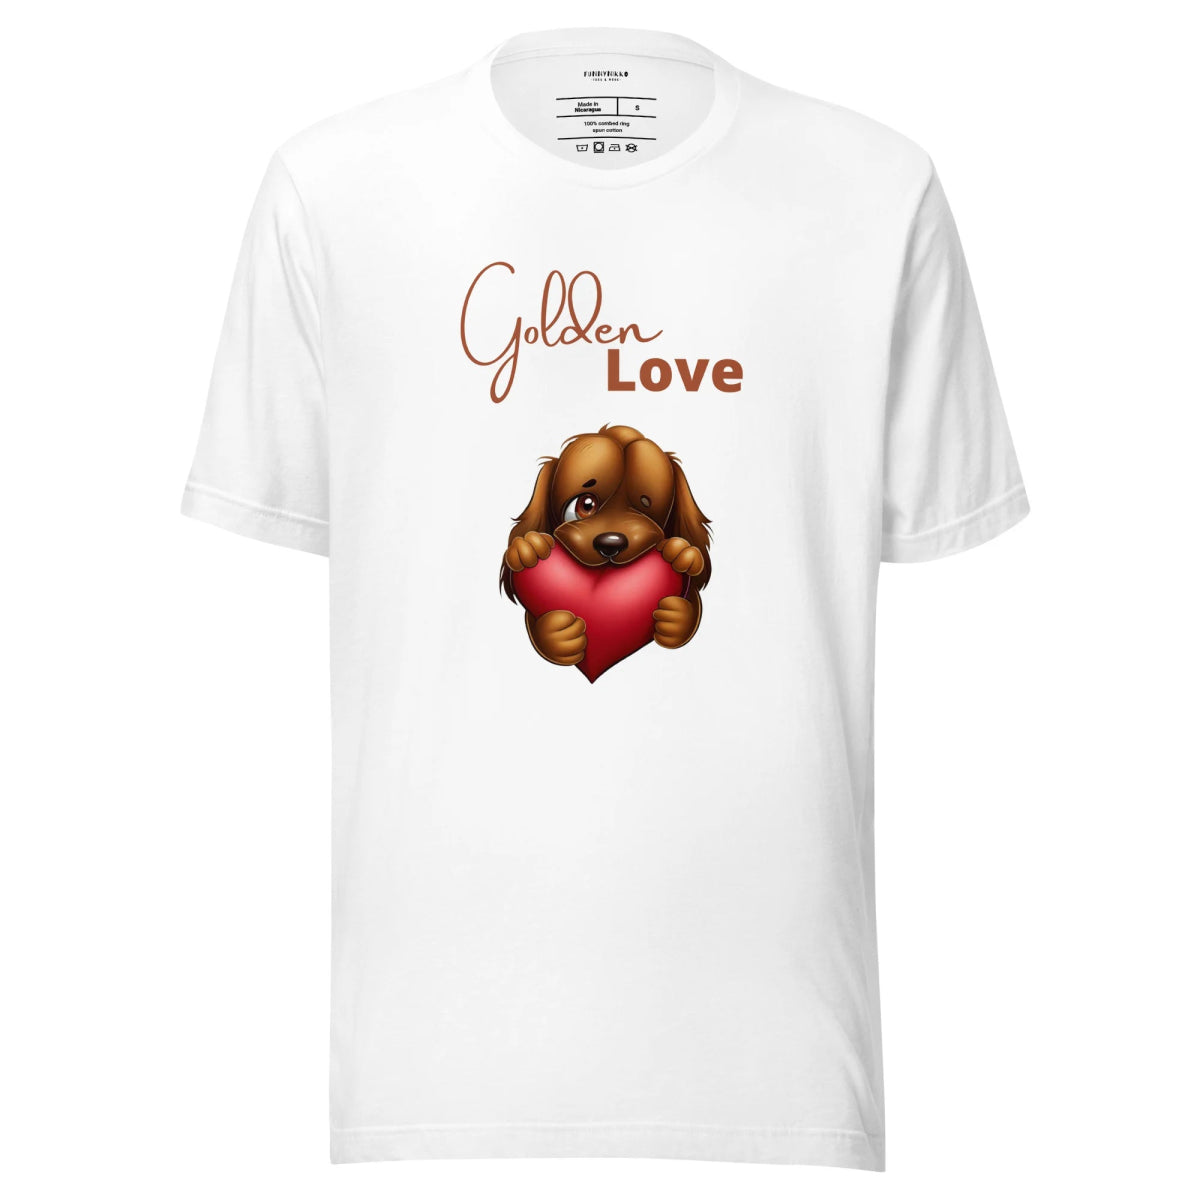 Golden Love Staple T-Shirt - Funny Nikko